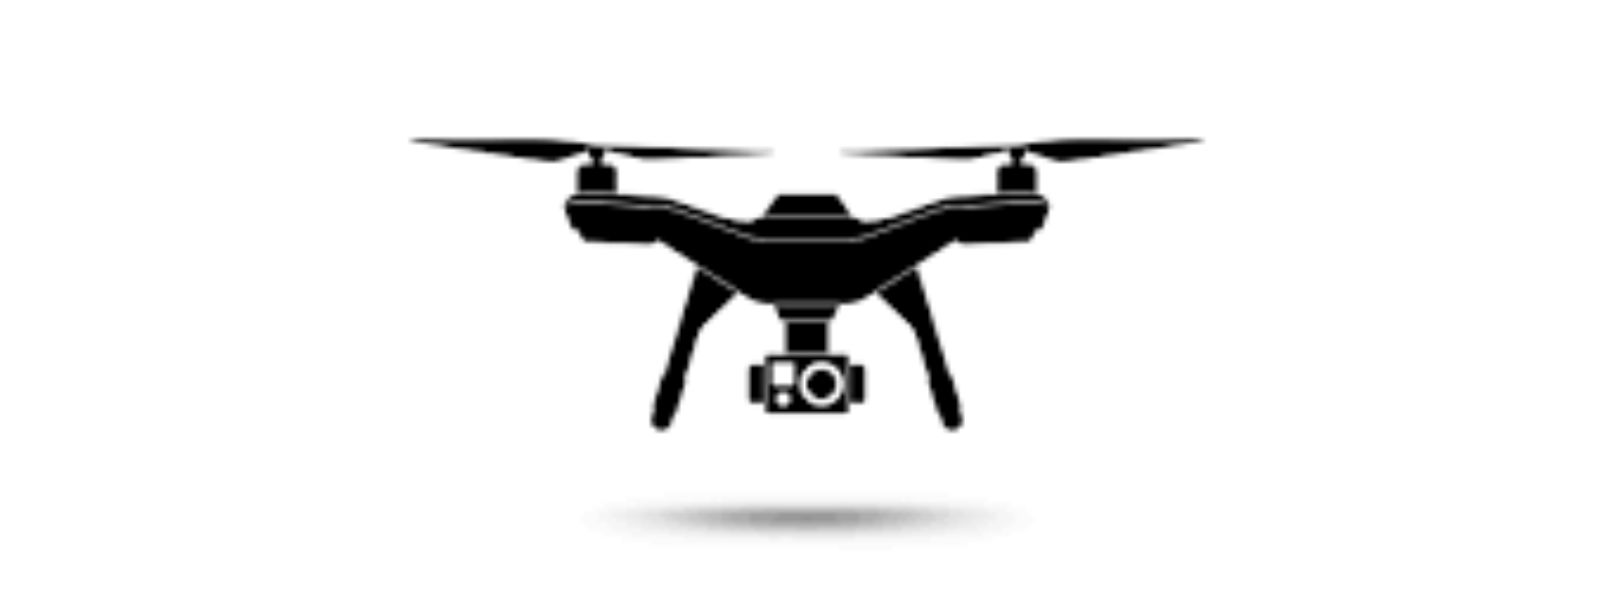 Drone கெமரா தொடர்பிலான கணக்கெடுப்பு ஆரம்பம்